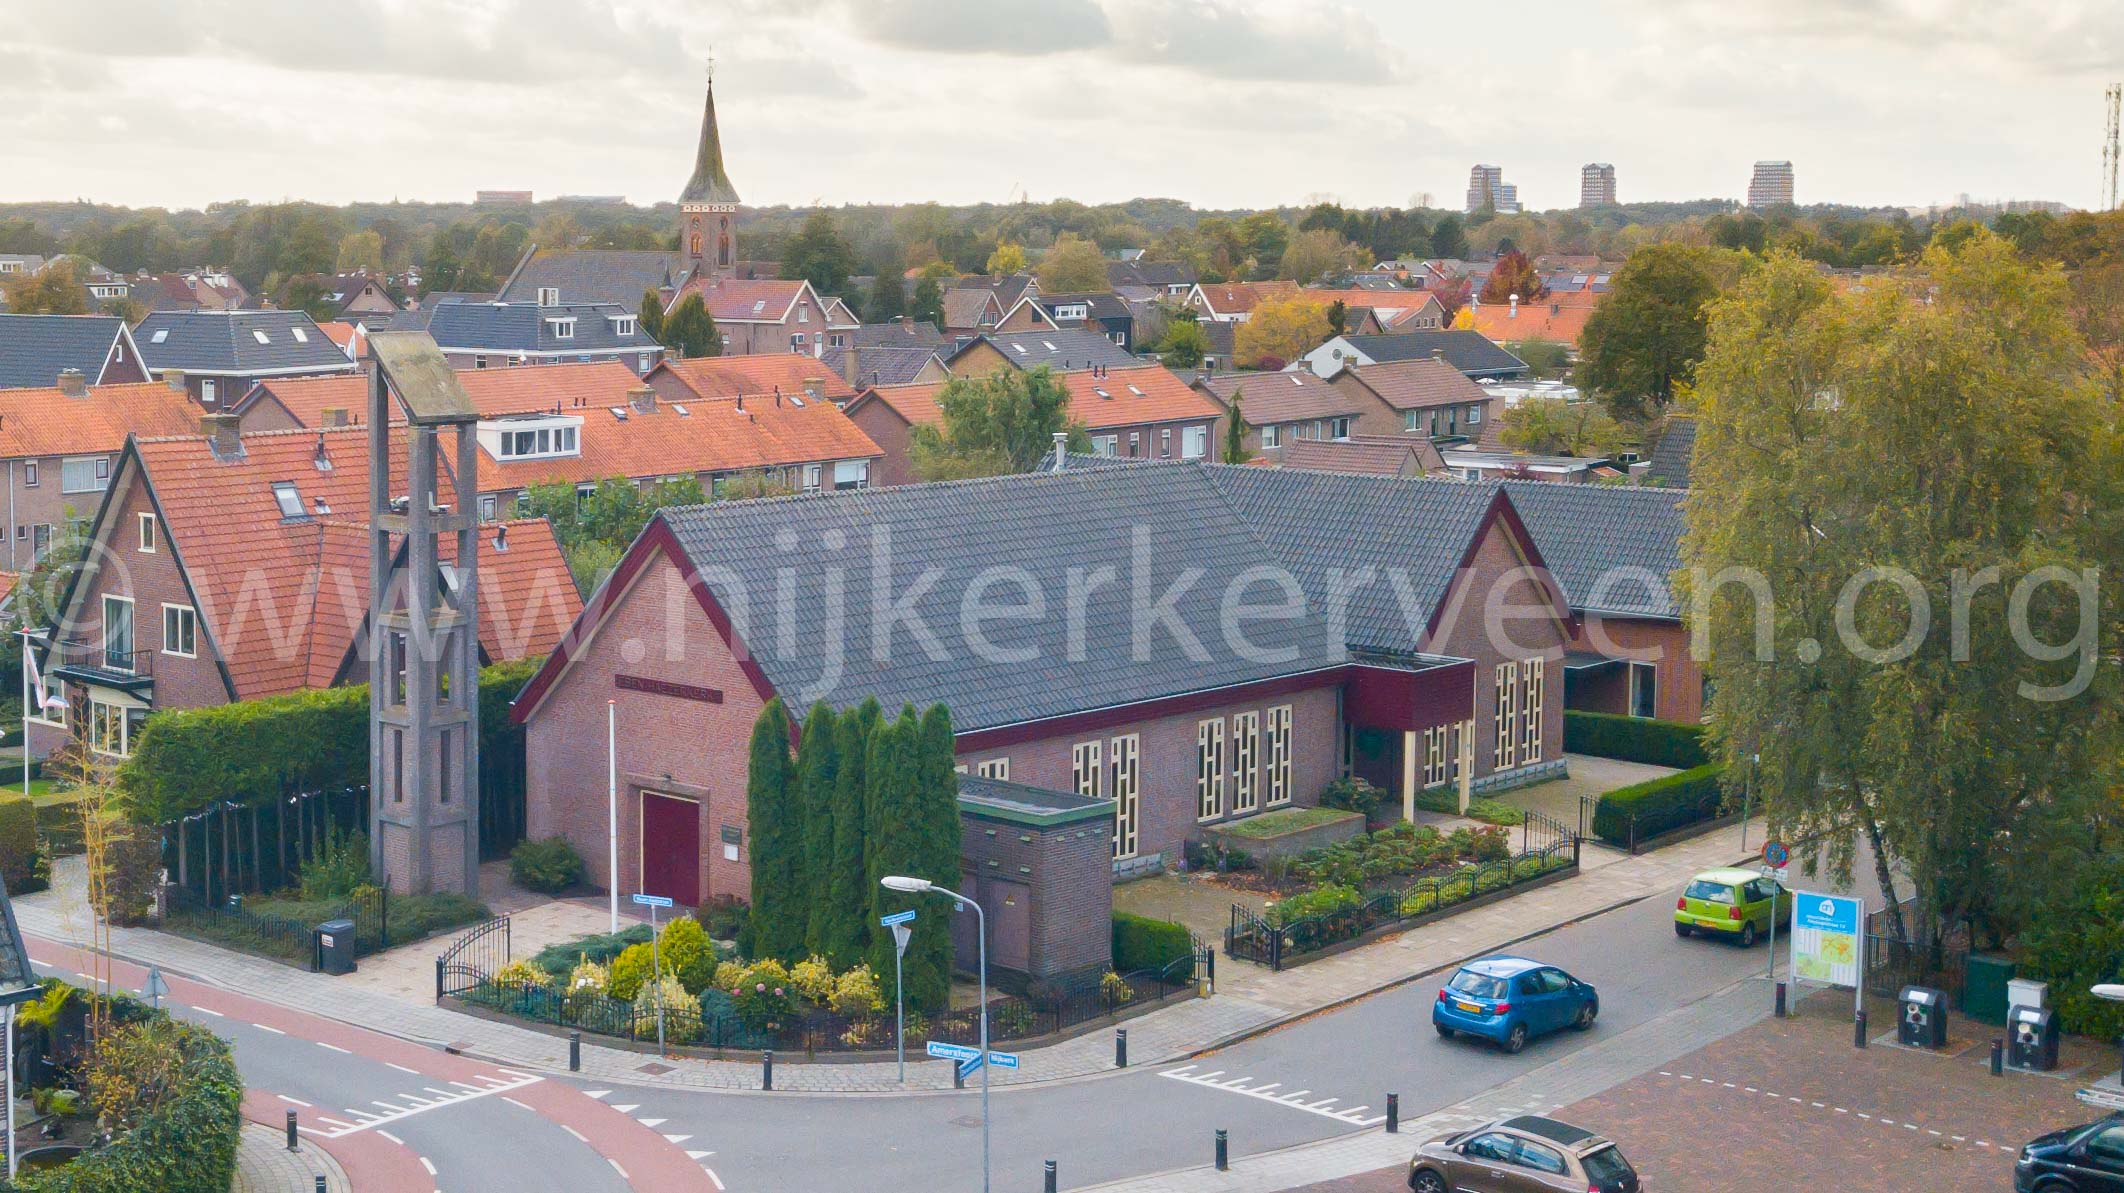 Eben-Haezerkerk Nijkerkerveen